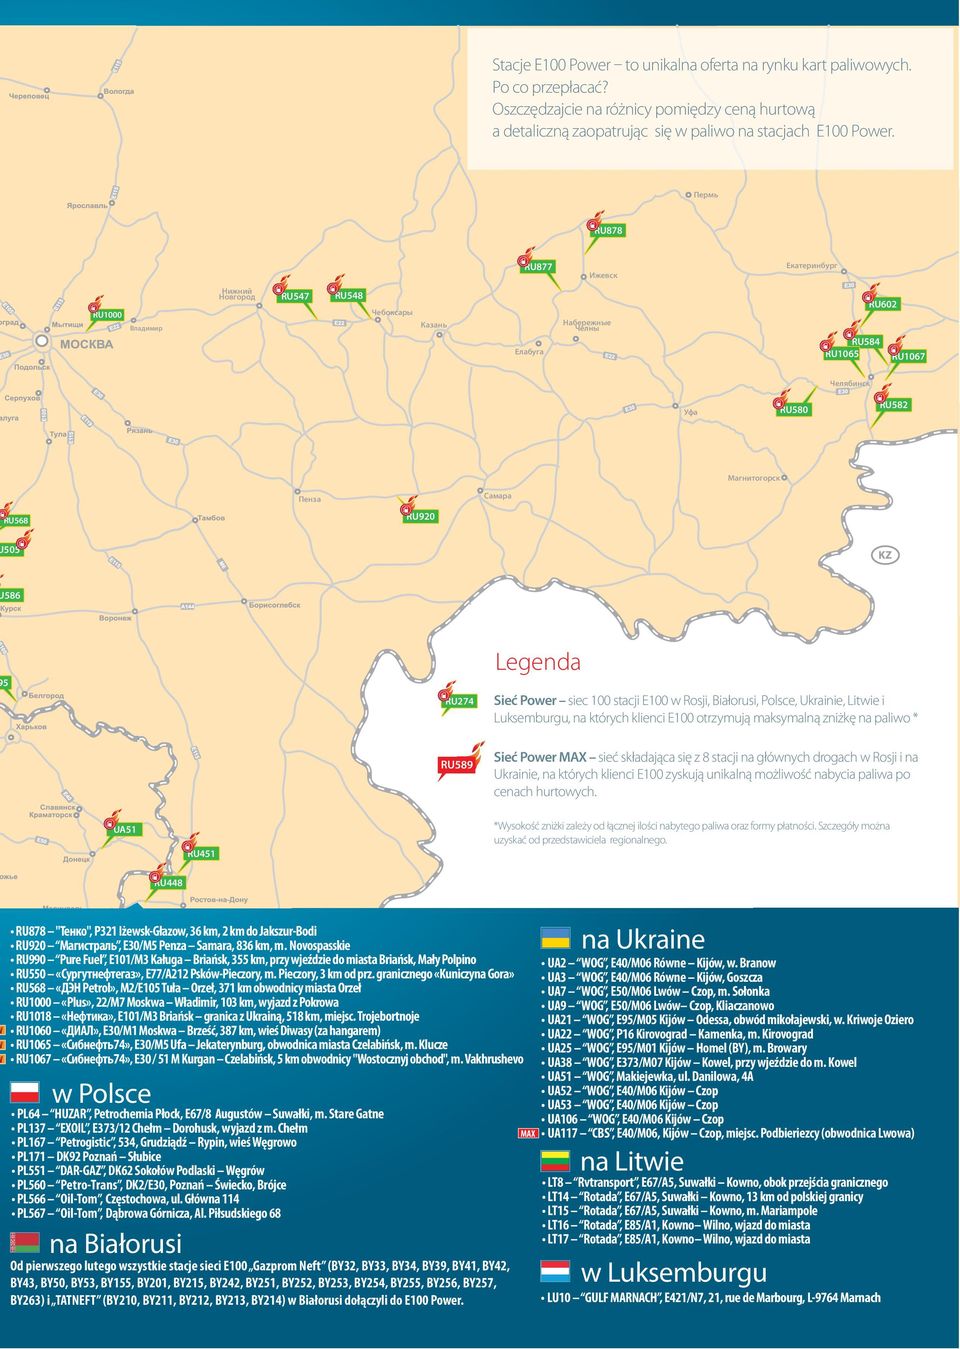 Самара RU568 RU920 505 586 5 RU274 Legenda Sieć Power siec 100 stacji Е100 w Rosji, Białorusi, Polsce, Ukrainie, Litwie i Luksemburgu, na których klienci E100 otrzymują maksymalną zniżkę na paliwo *